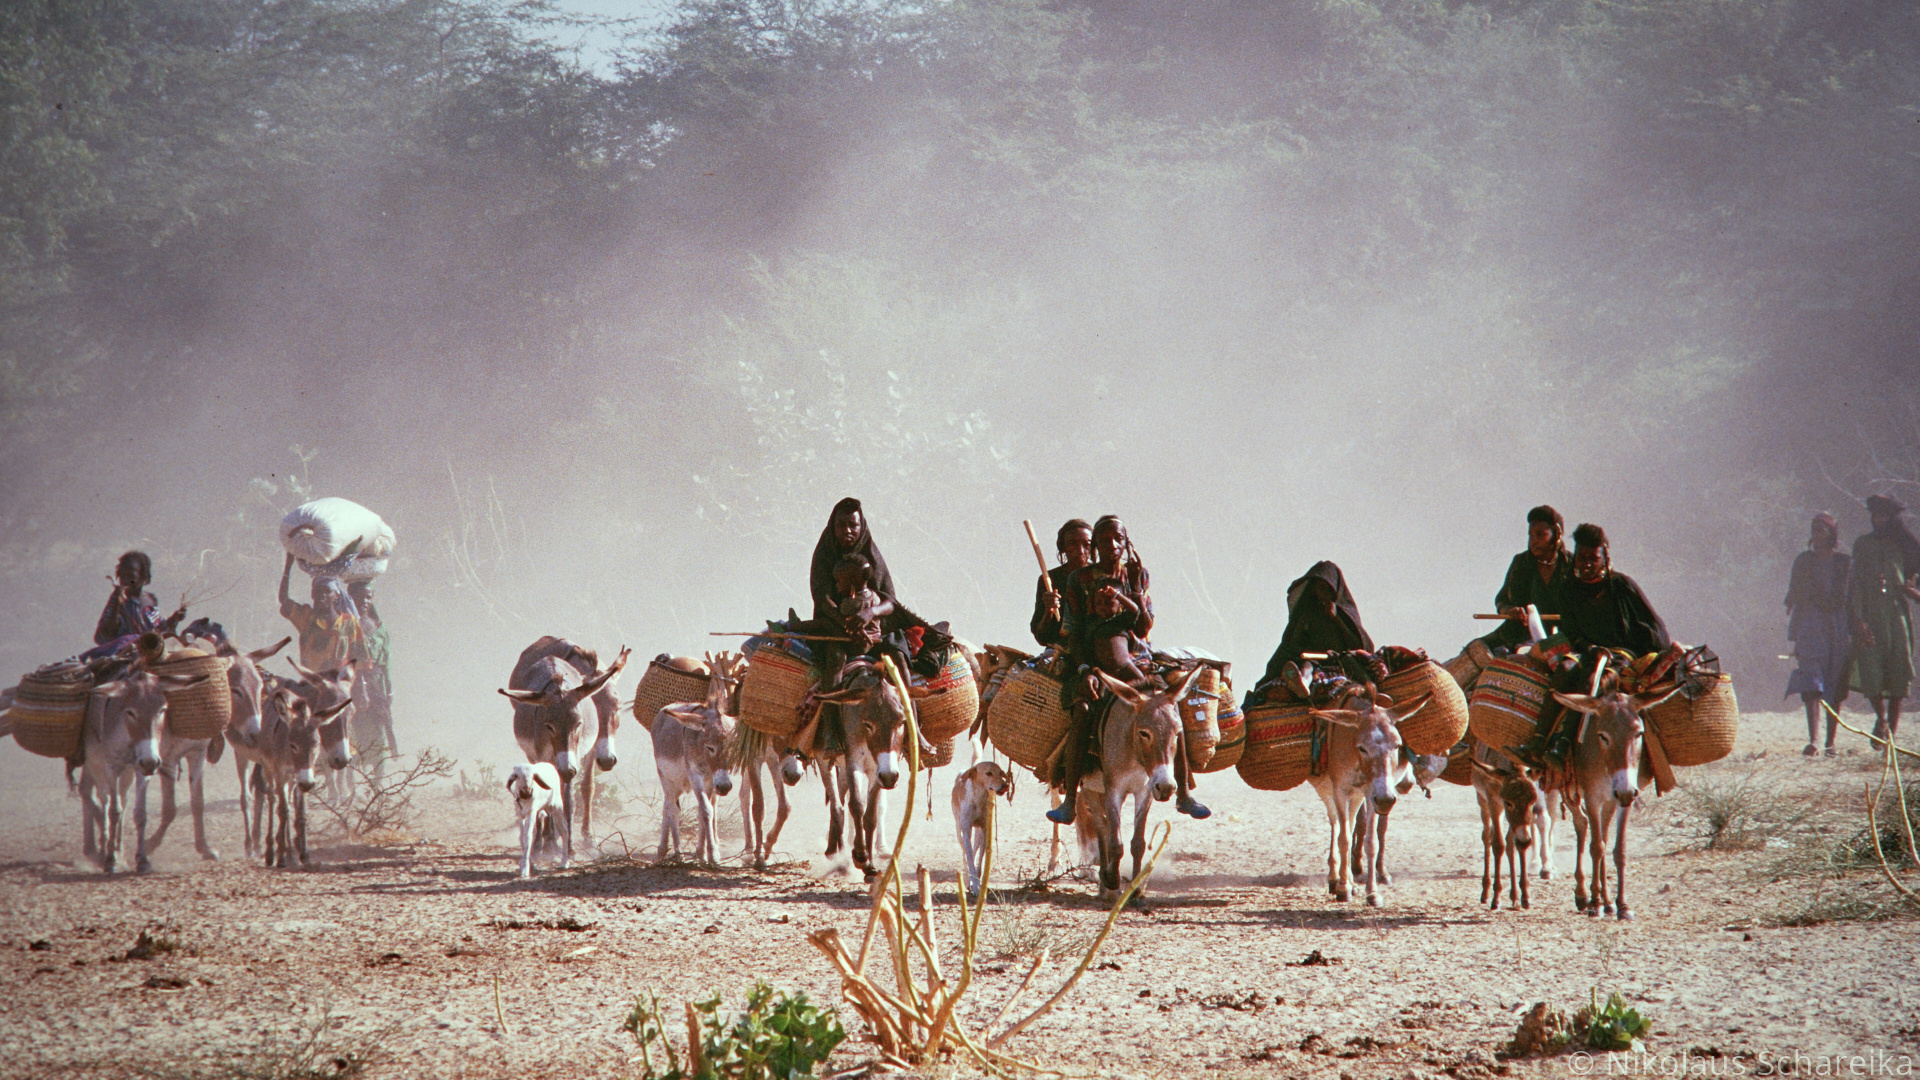 Pastoral nomads, Southeast Niger, Rich cultural heritage, 1920x1080 Full HD Desktop